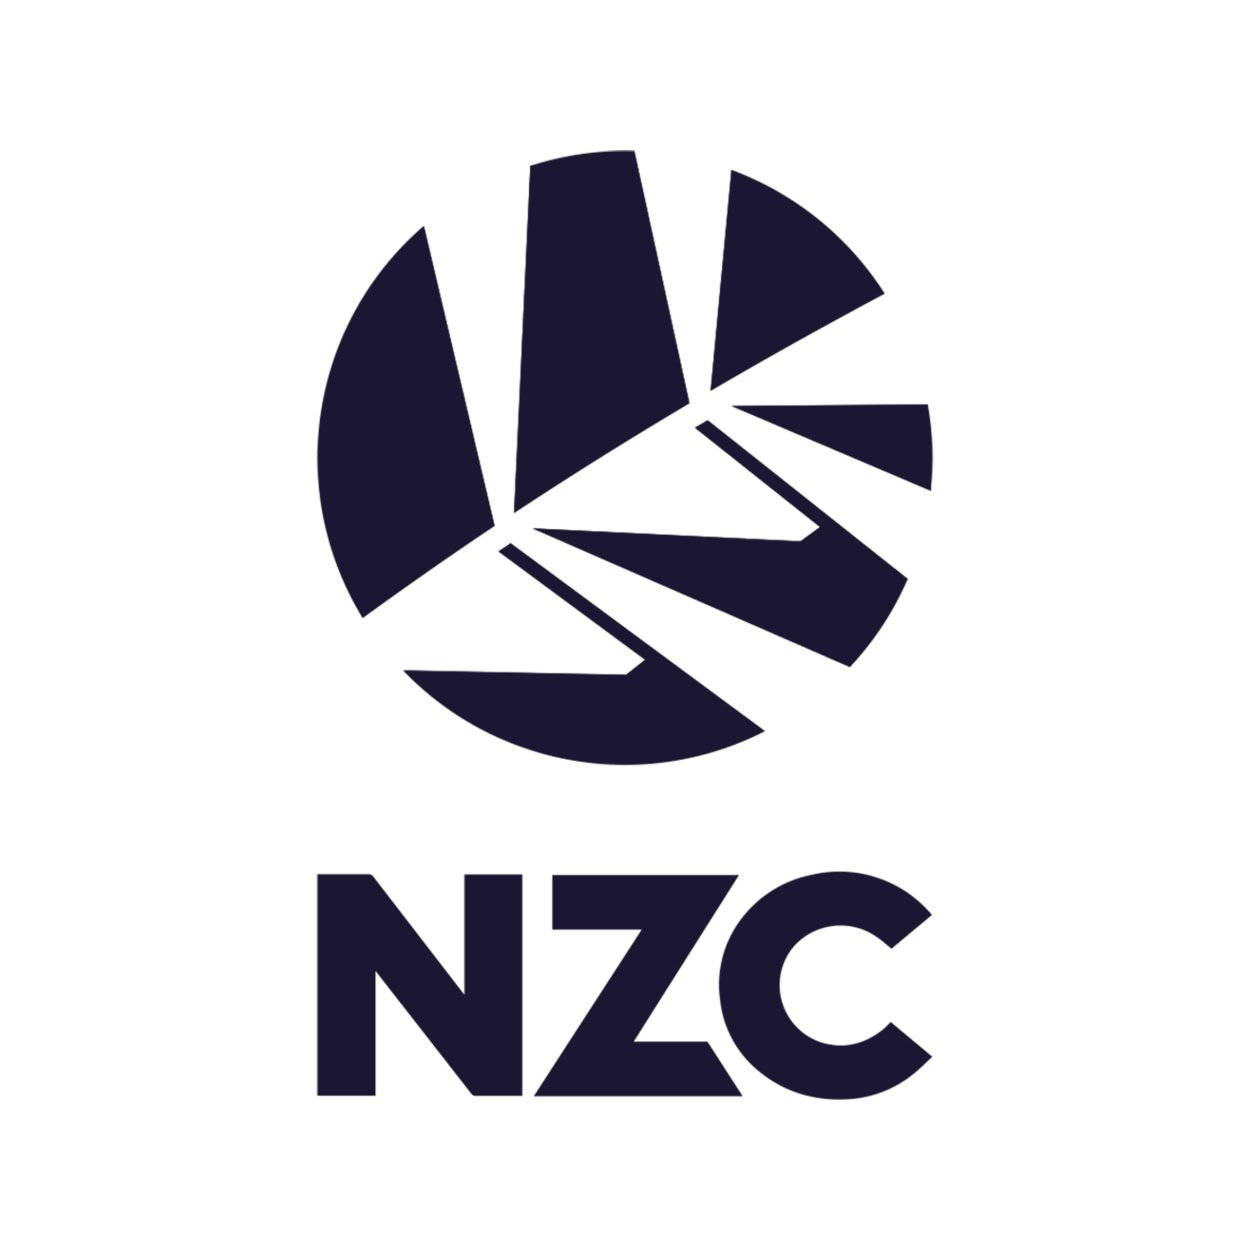 Novologo Alternativo Da Equipe De Críquete Da Nova Zelândia. Papel de Parede